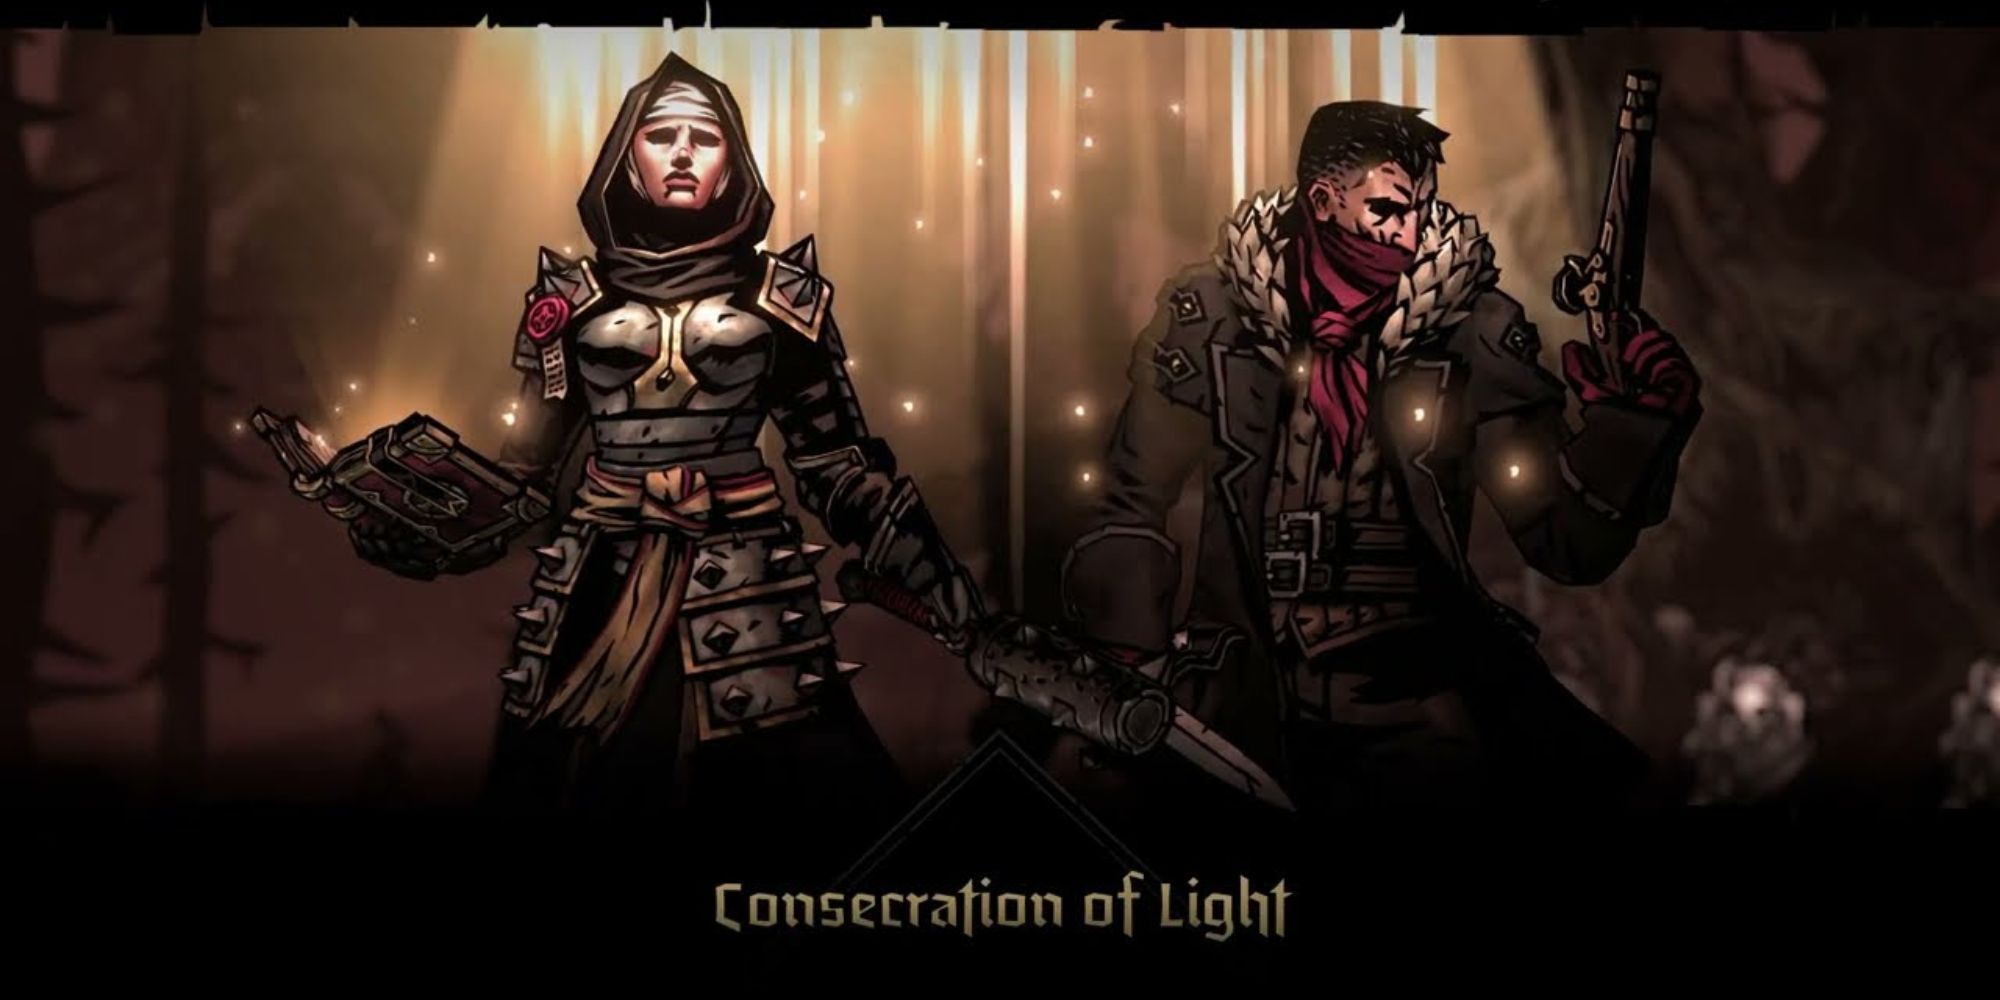 darkest dungeon 2 vestal casting dedication of light on the bandit